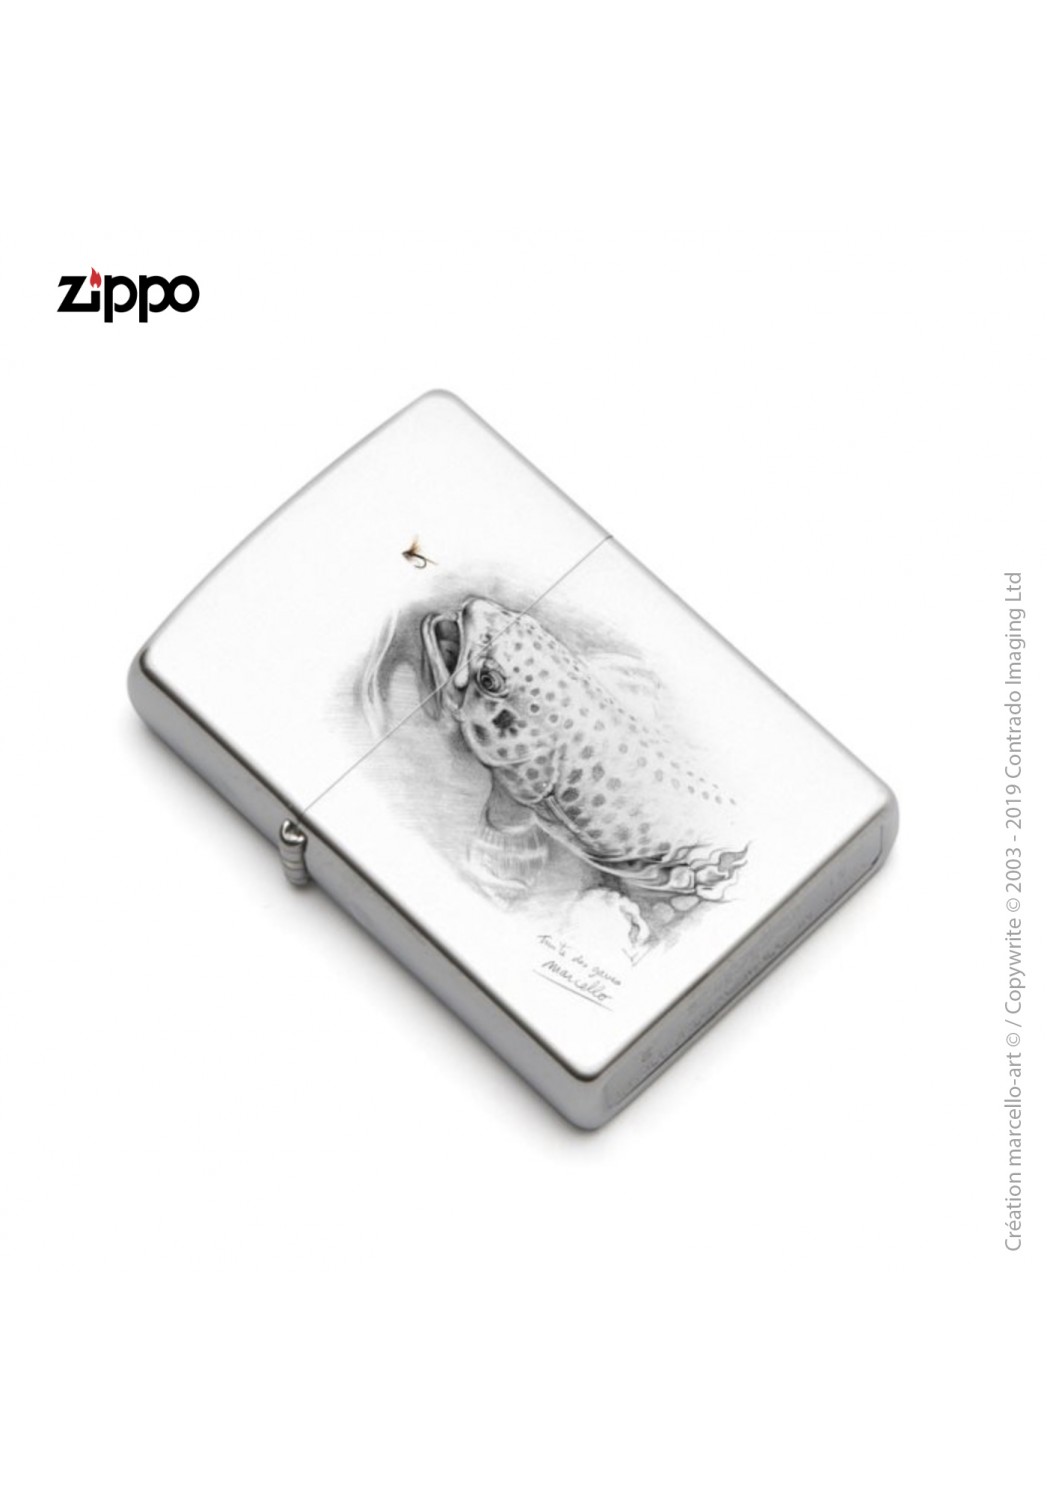 Marcello-art : Accessoires de décoration Zippo 46 truite des gaves